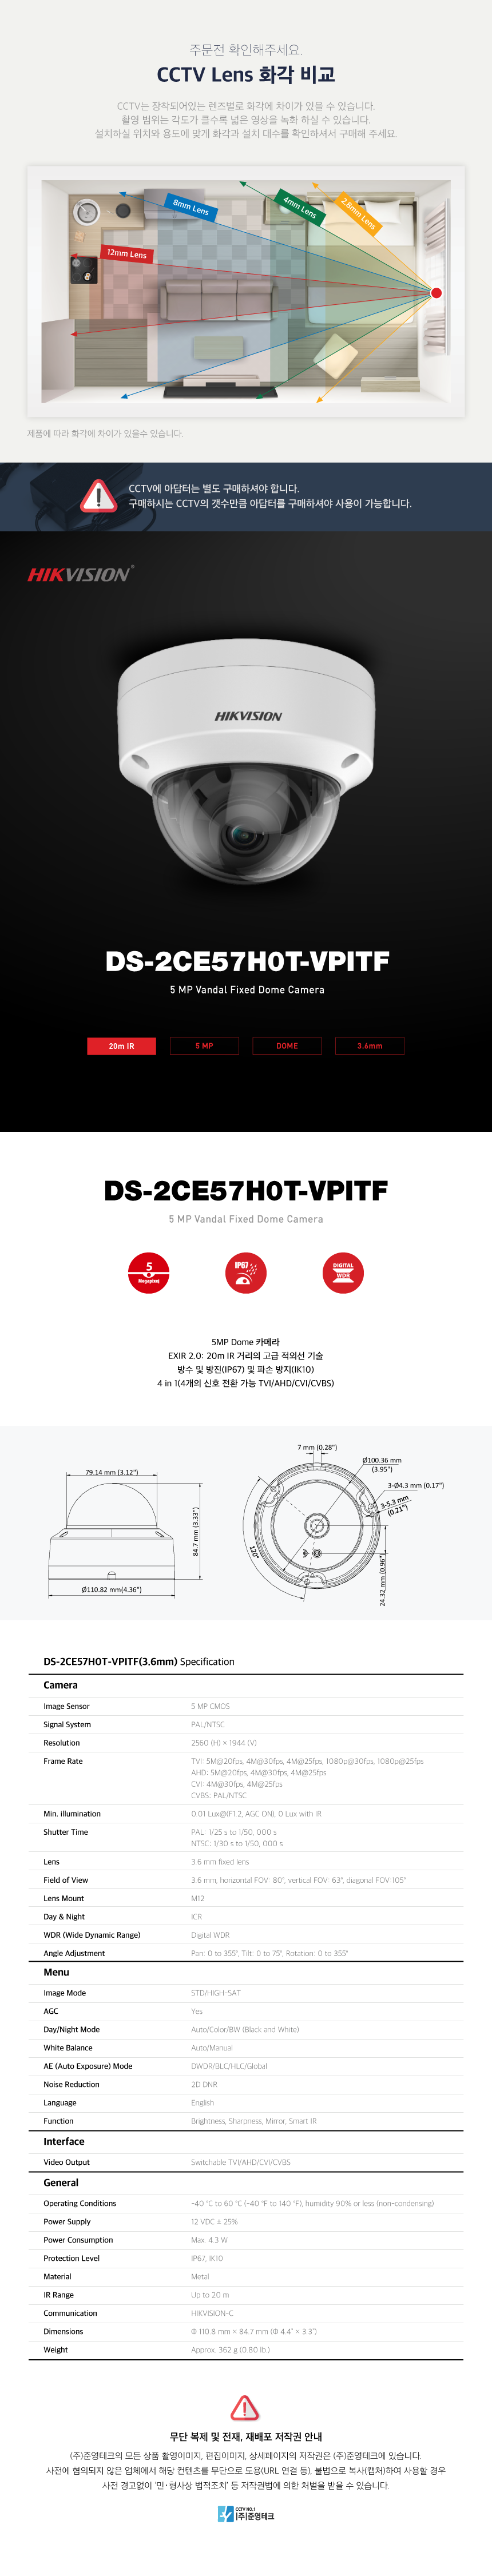 DS-2CE57H0T-VPITF_3.6mm_165402_110859.png